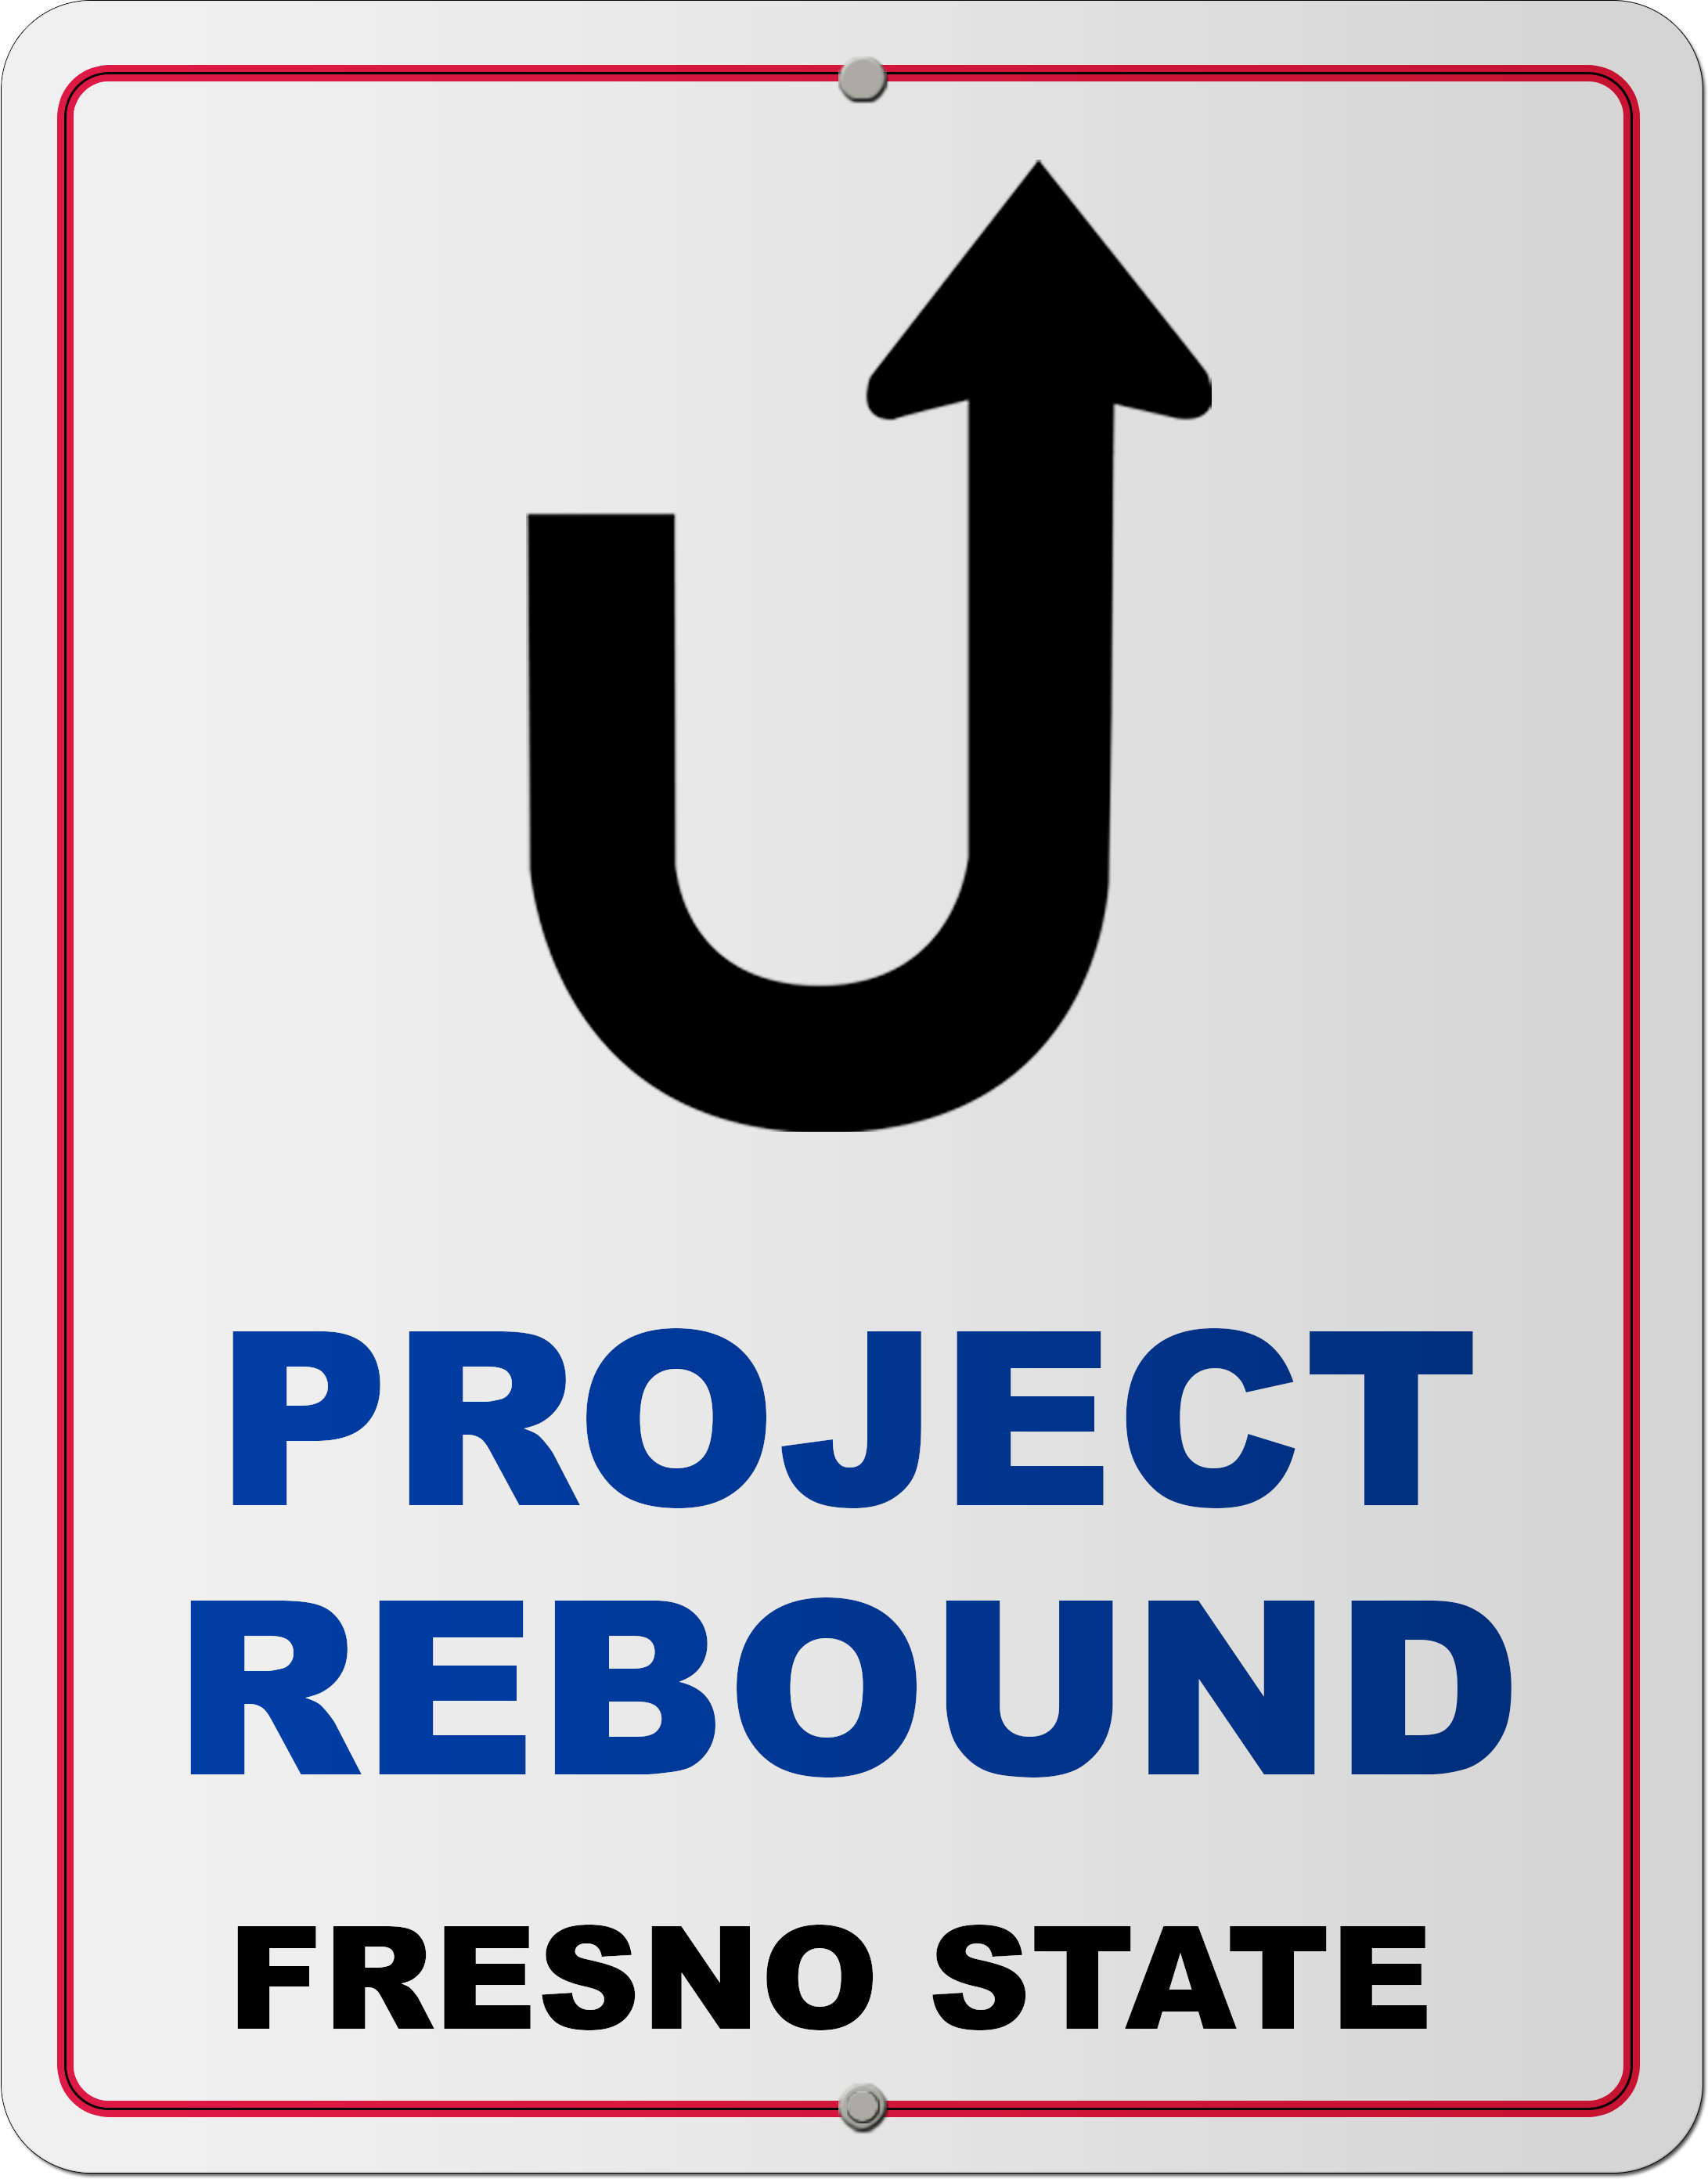 Project Rebound Logo